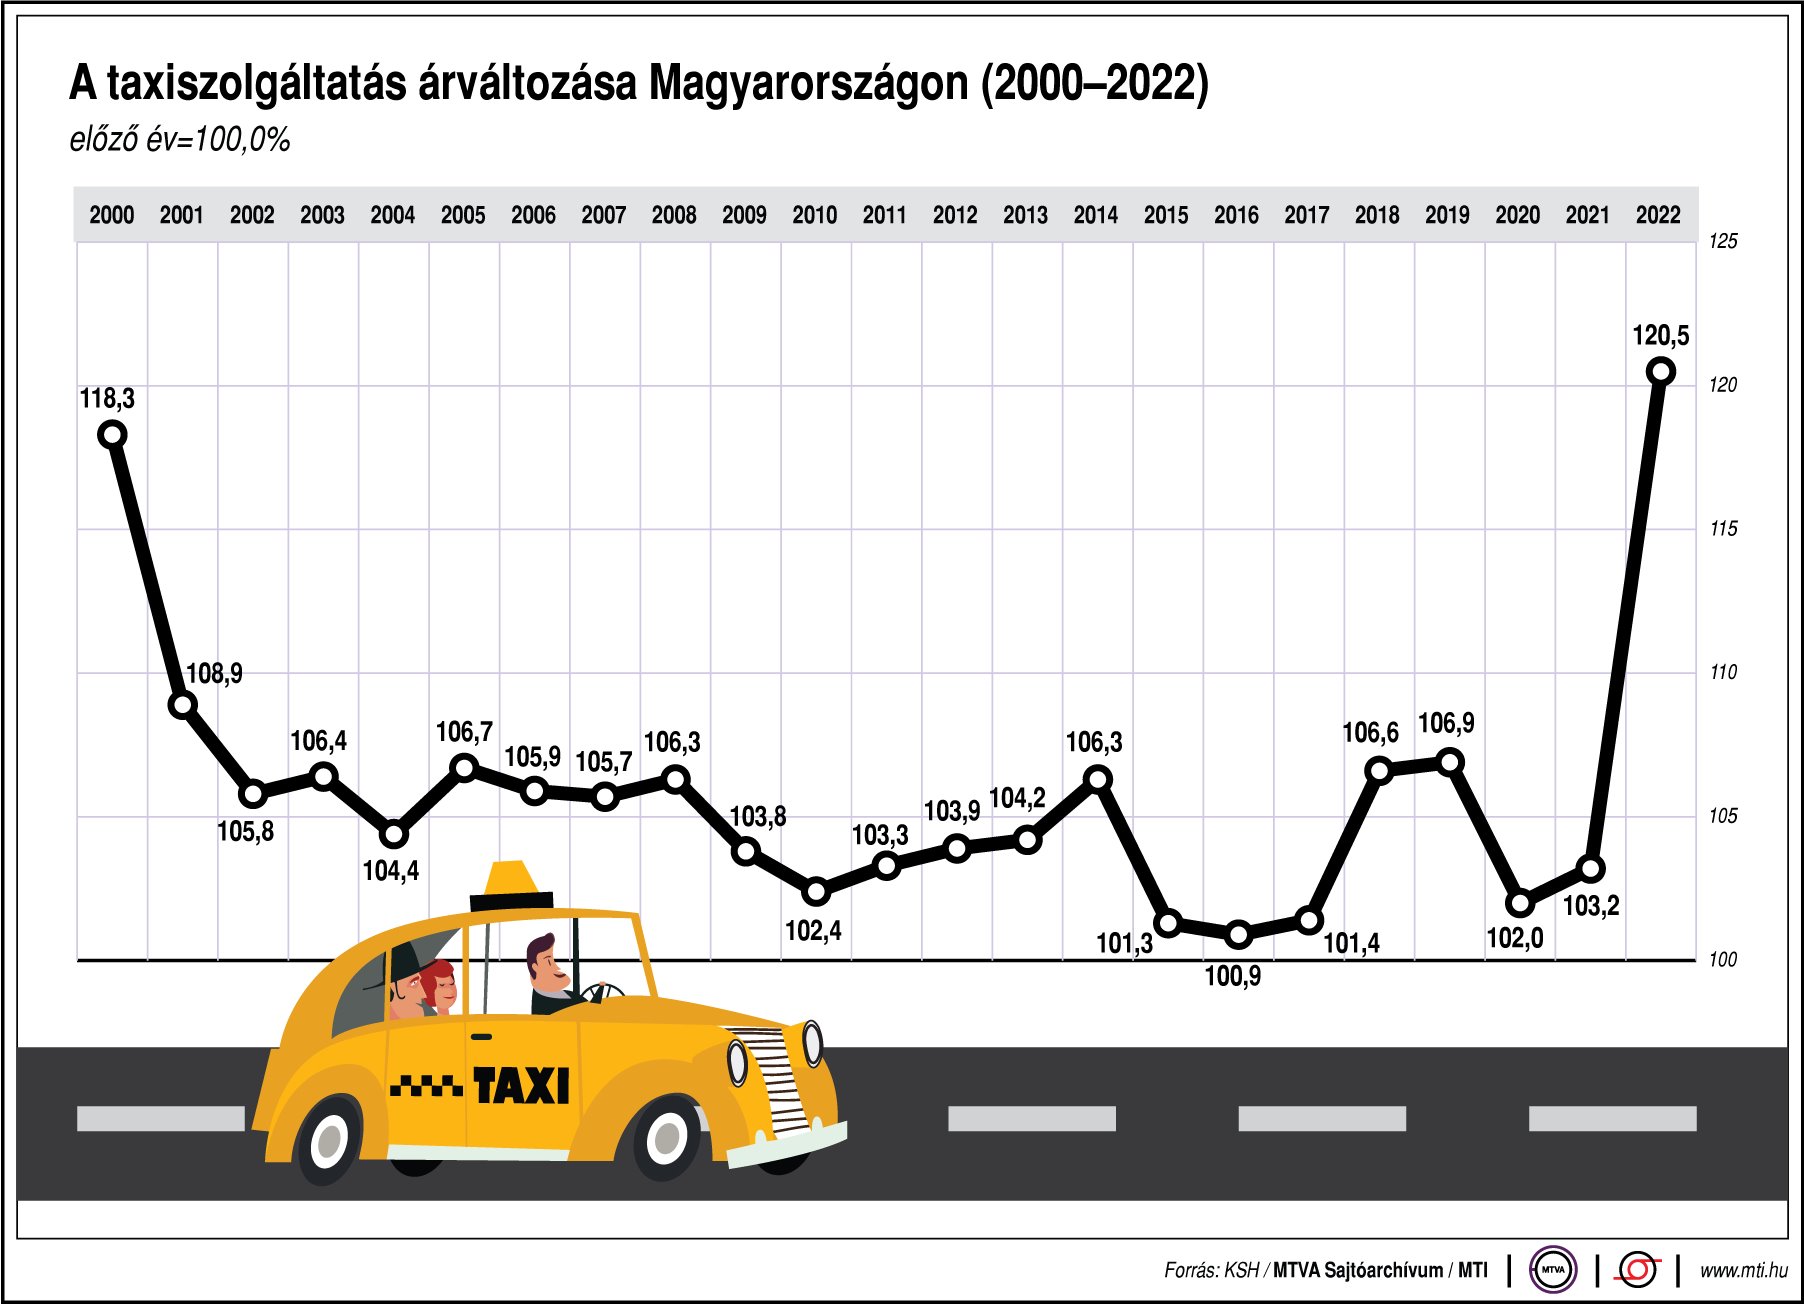 A taxiszolgáltatás árváltozása Magyarországon (2000-2022)